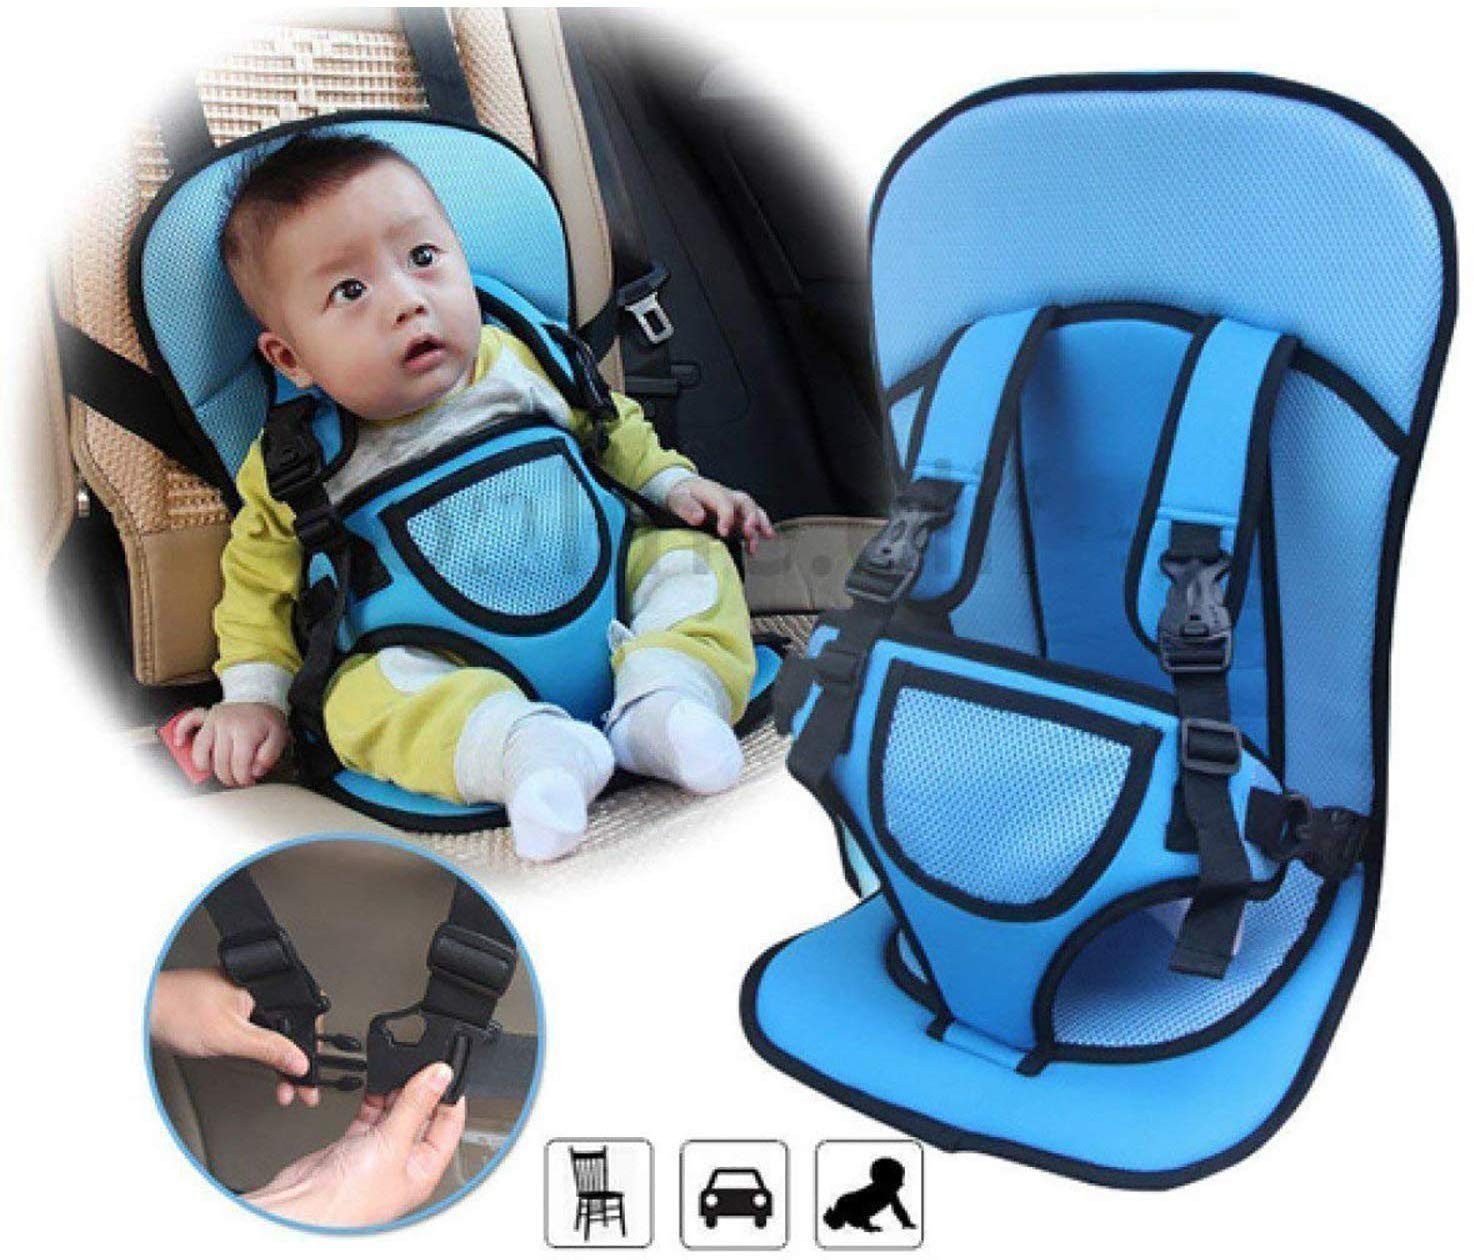 Coussin de voiture pour bébé avec ceinture de sécurité multifonction